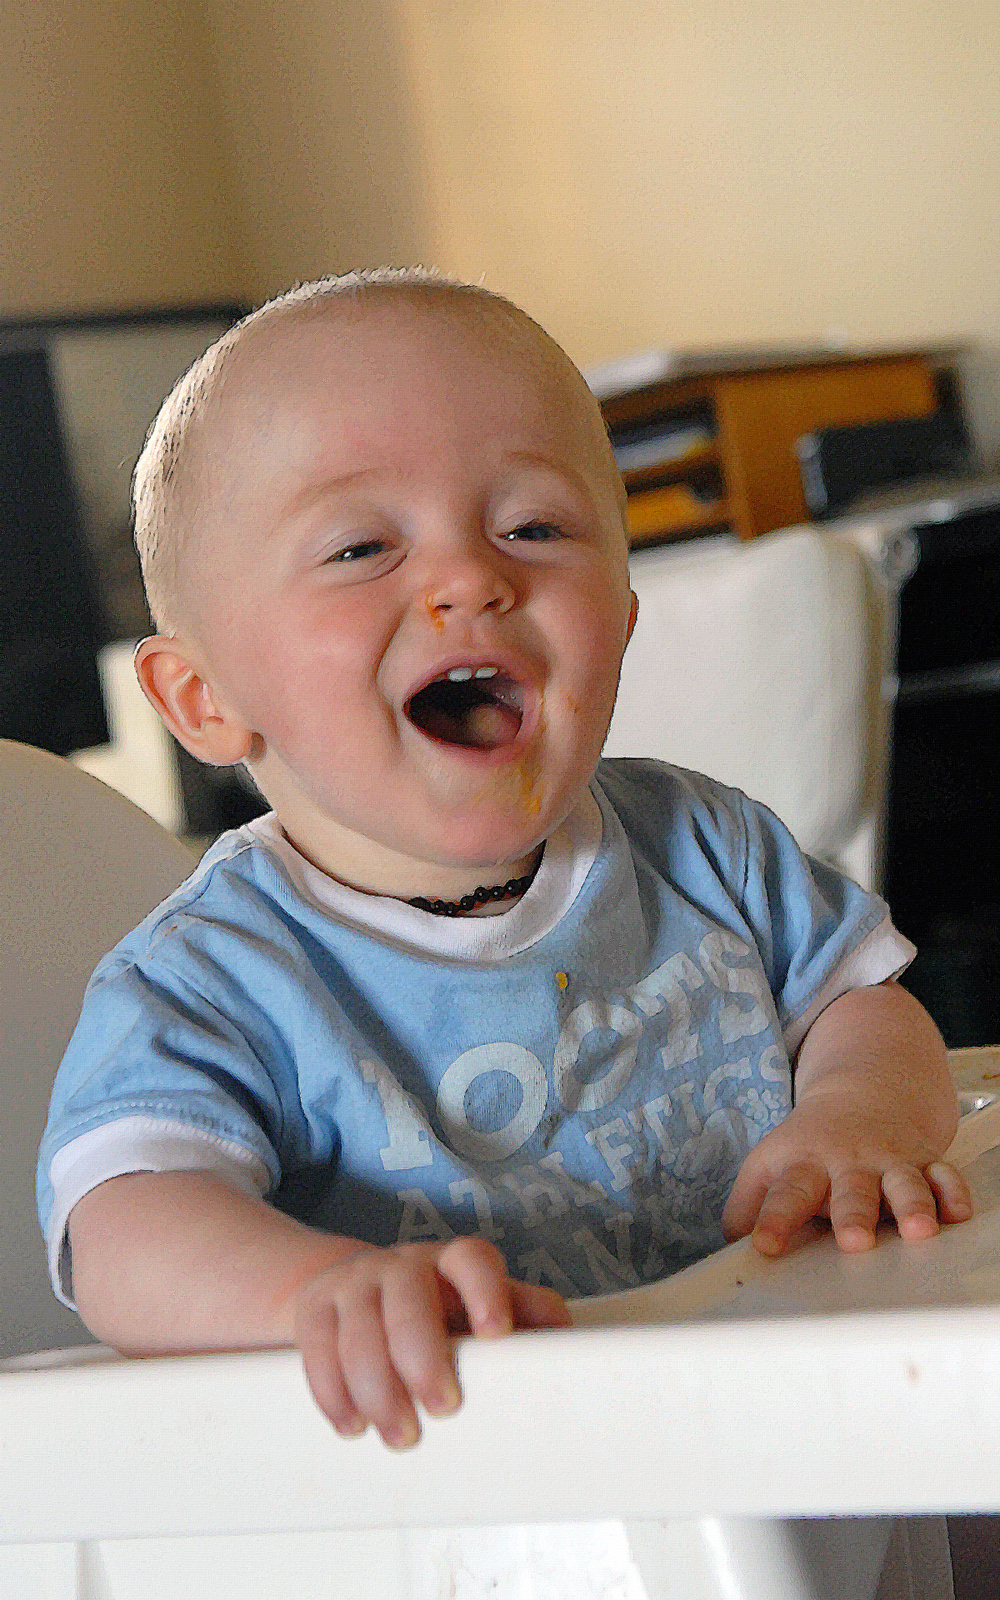 a baby wearing blue pajamas smiling at the camera